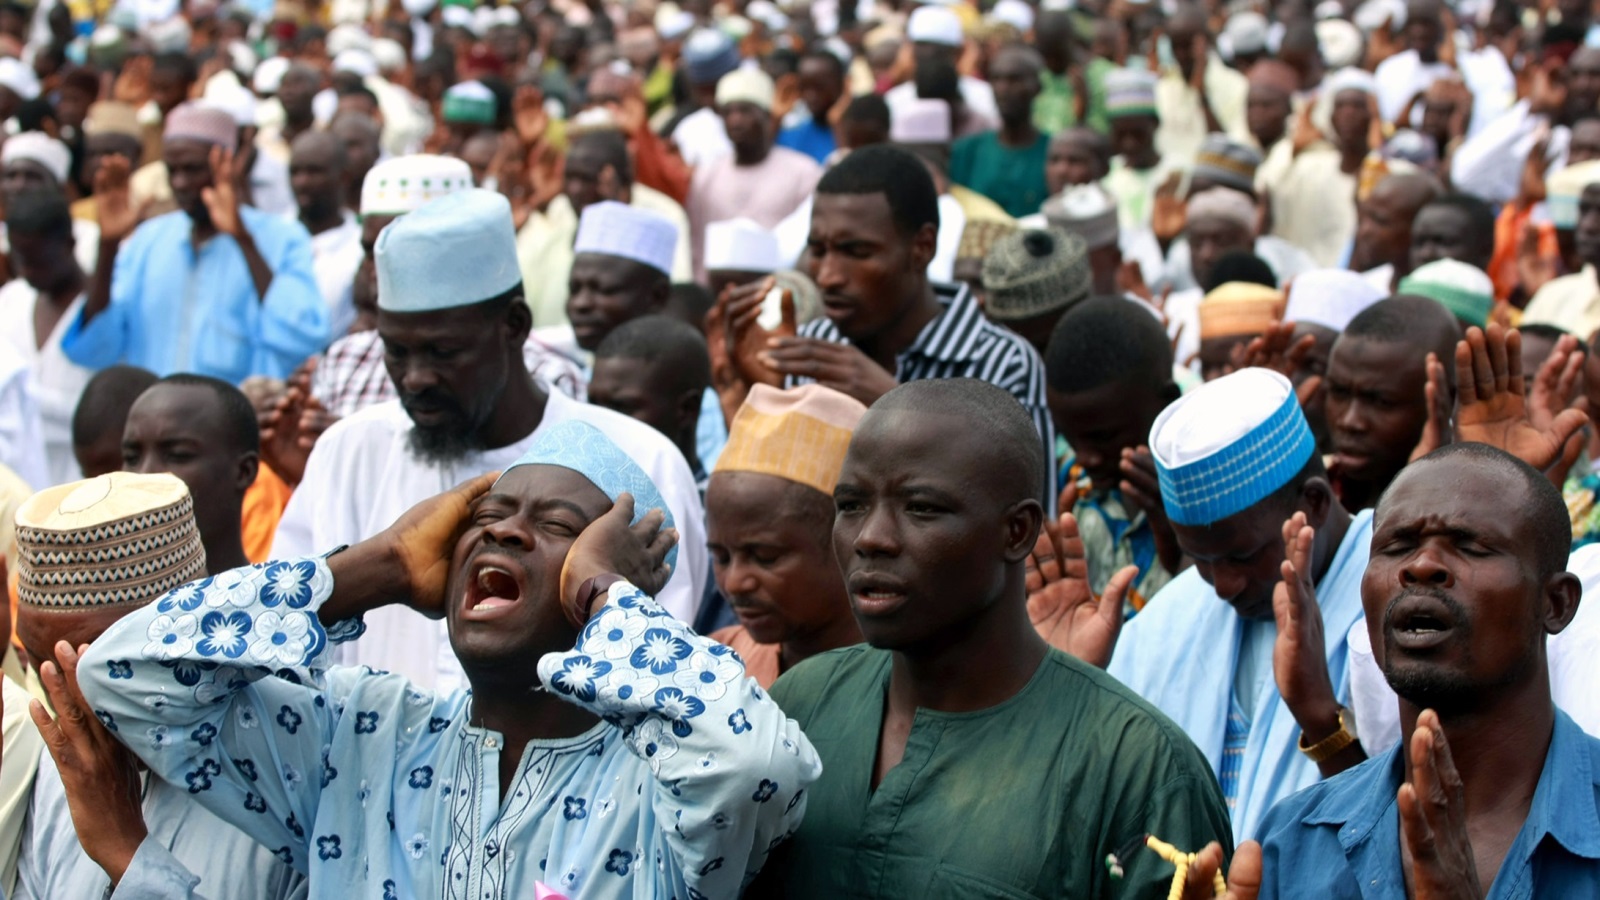 لم يقتصر النفوذ الثقافي والاجتماعي السعودي في نيجيريا على دعم العلماء السنة بل امتد لدعم عشرات المؤسسات والمعاهد الدينية والخيرية التي شيدتها المملكة في نيجيريا